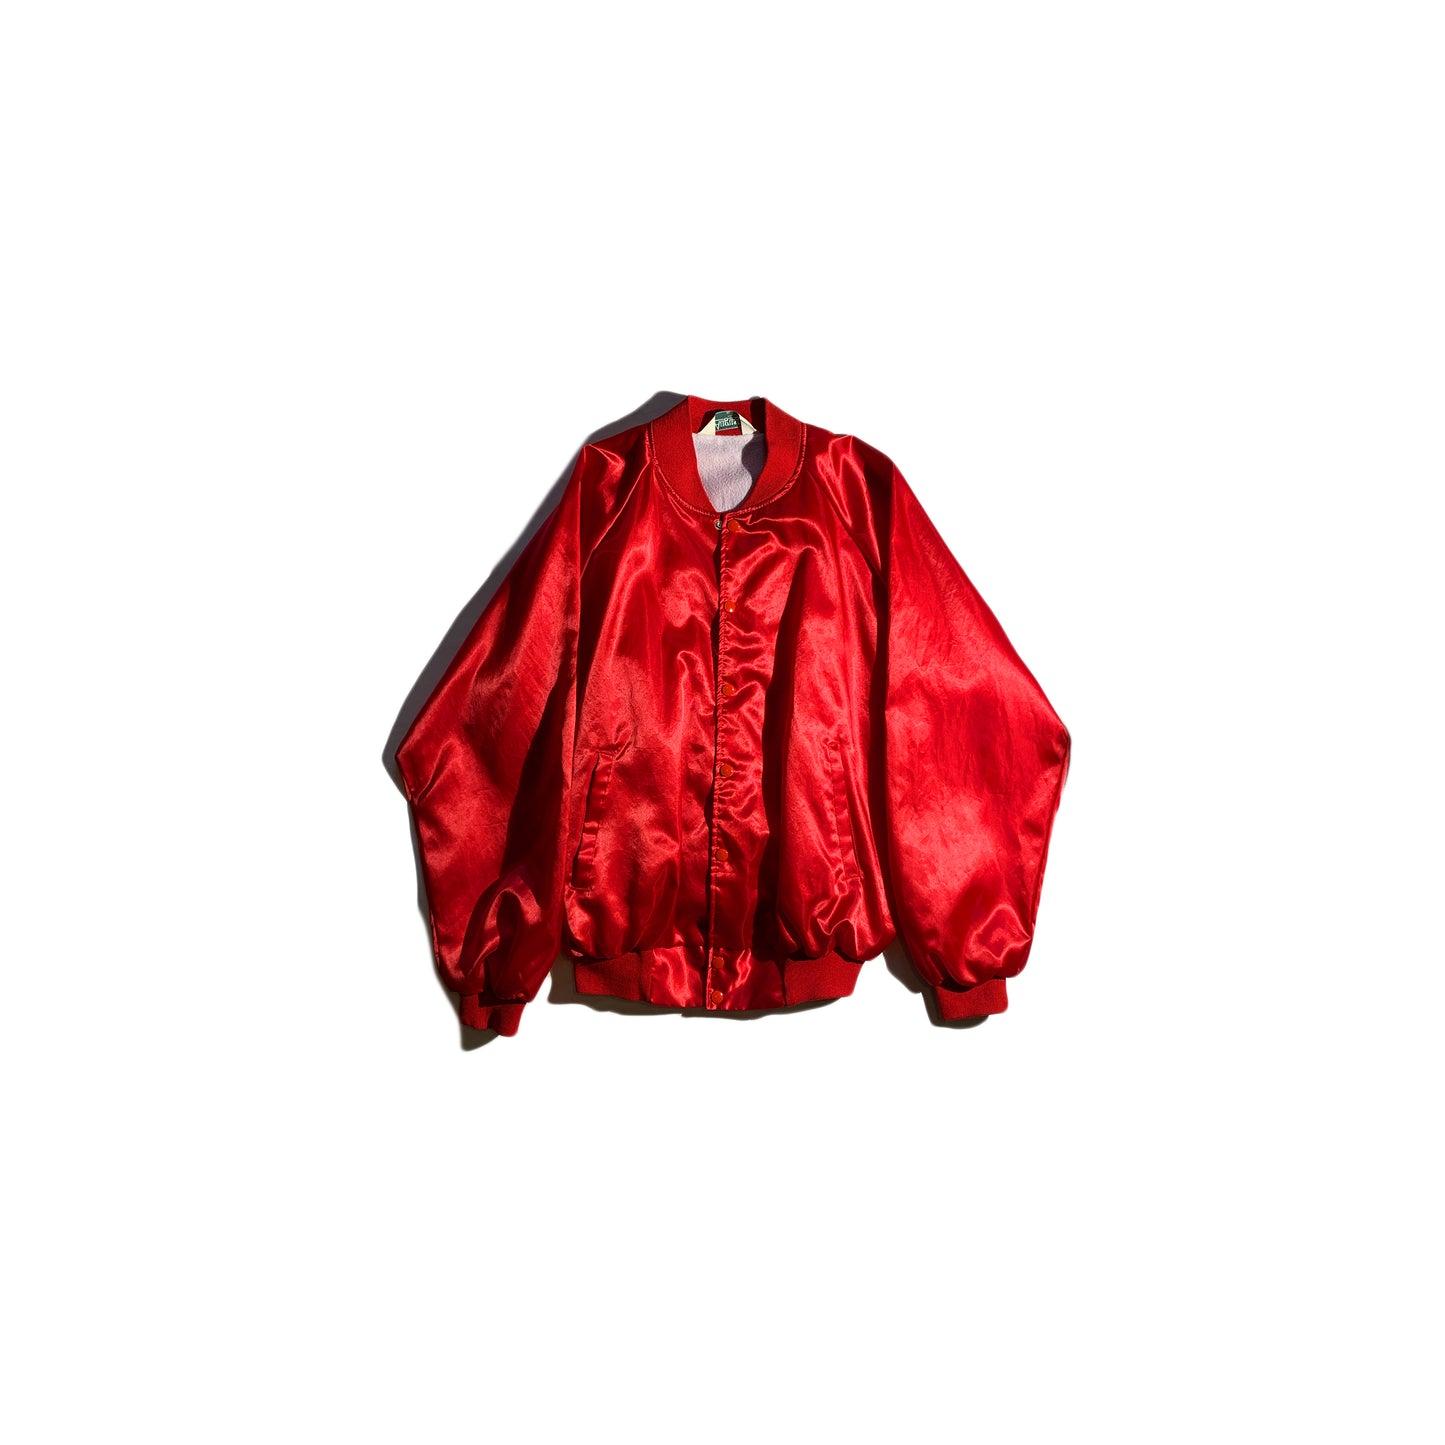 Vintage Red Bomber Jacket